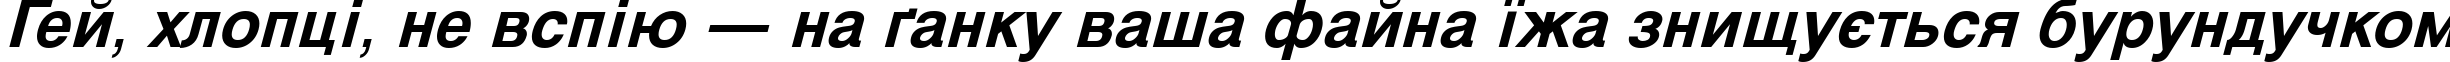 Пример написания шрифтом Svoboda Bold Italic текста на украинском